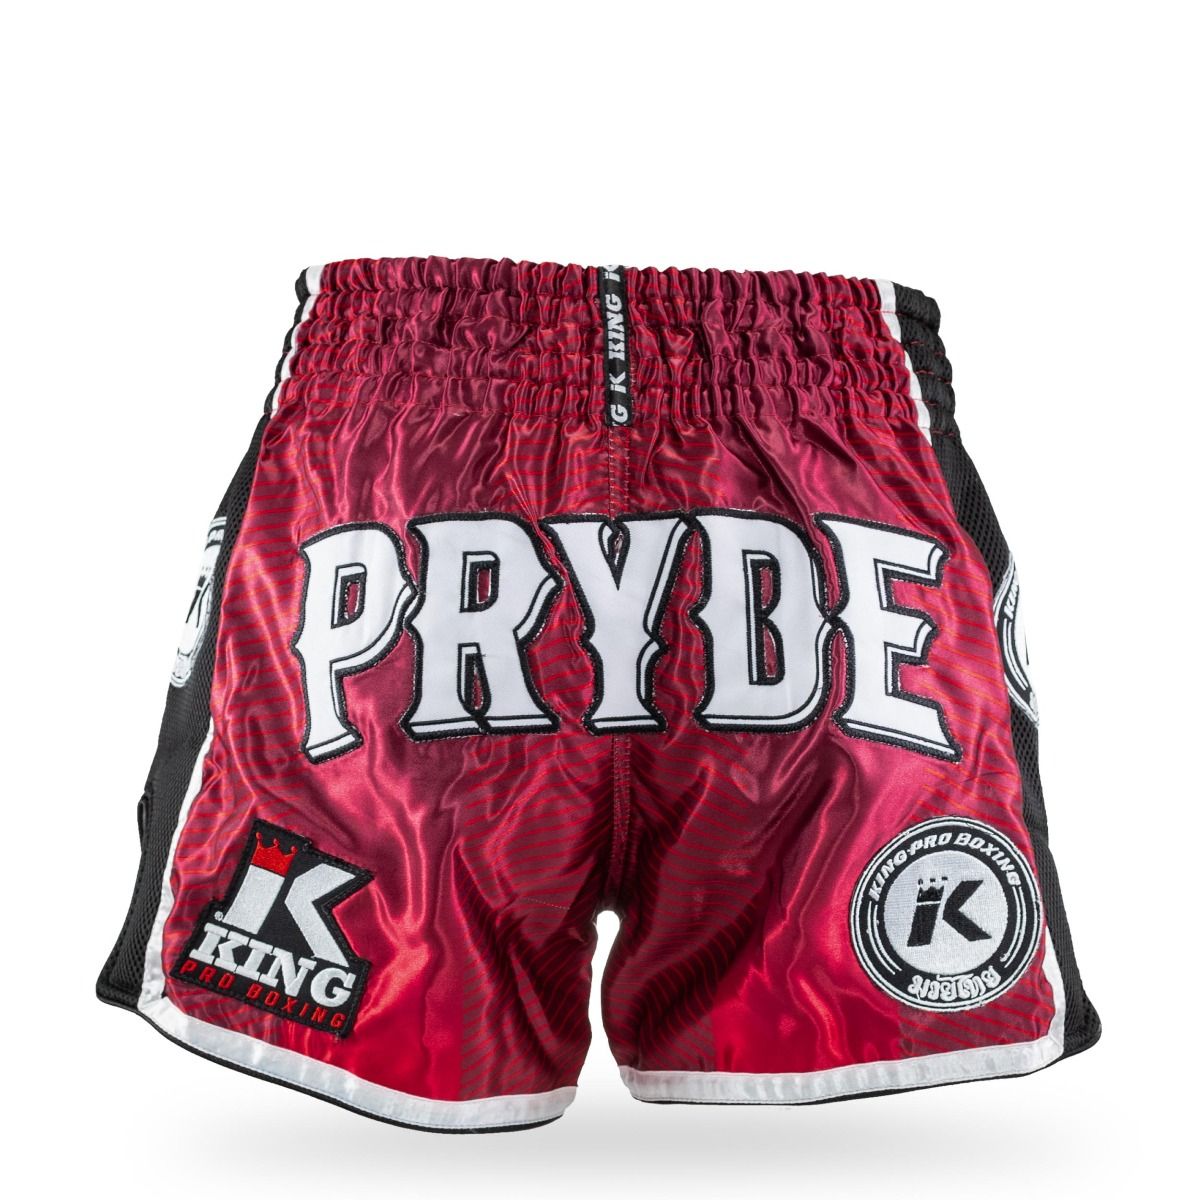 King Pro Boxing - Fightshort - korte broek - PRYDE 1 - rood - groen - zwart